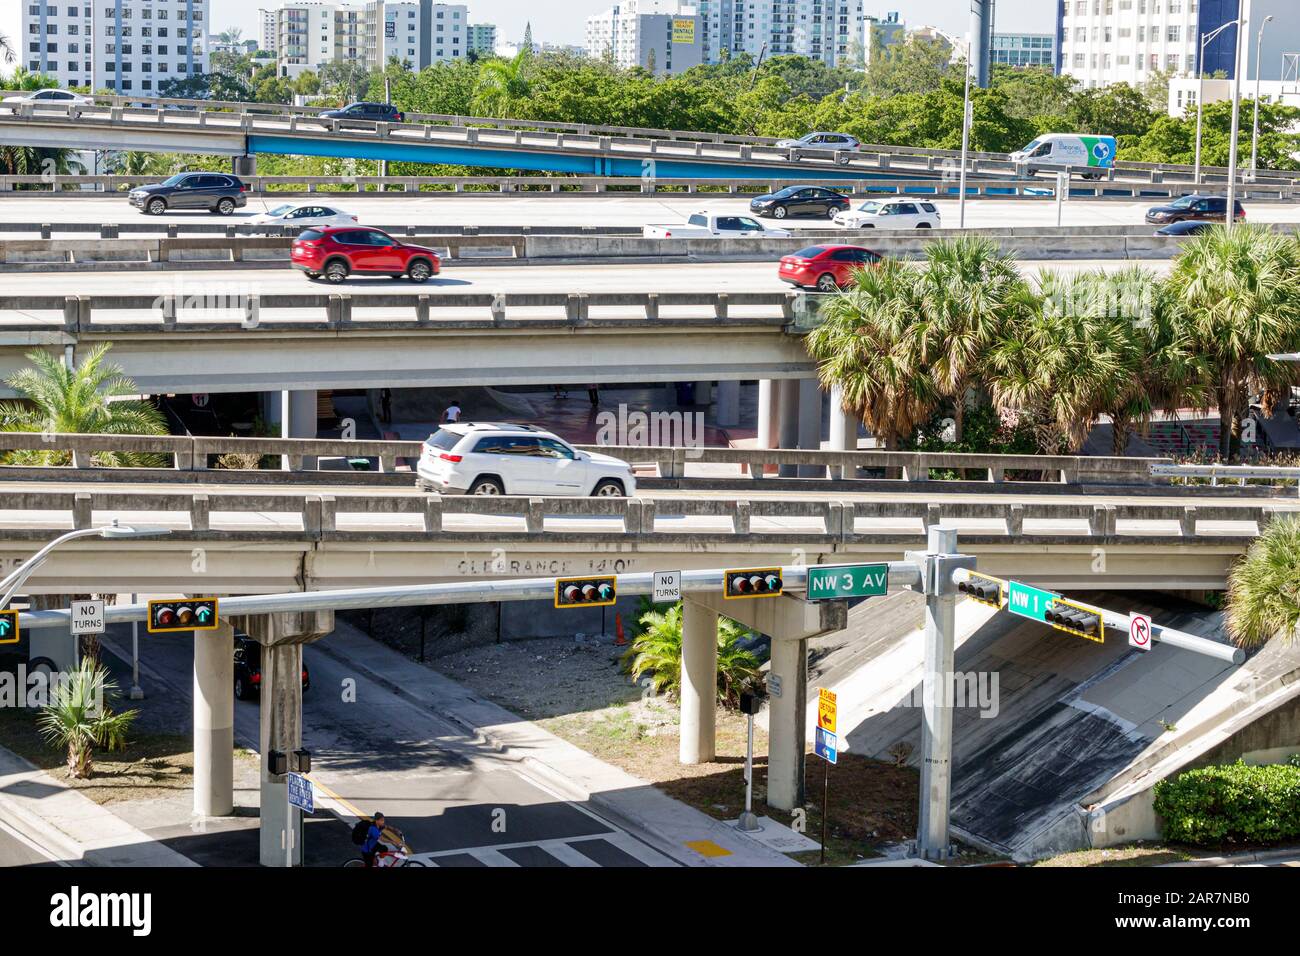 Miami Florida, erhöhte Autobahn, Eingang Ausfahrt Rampe Brücke Brücken, Interstate I95 95, Autos Fahrzeuge, Besucher reisen Reise touristischer Tourismus landma Stockfoto